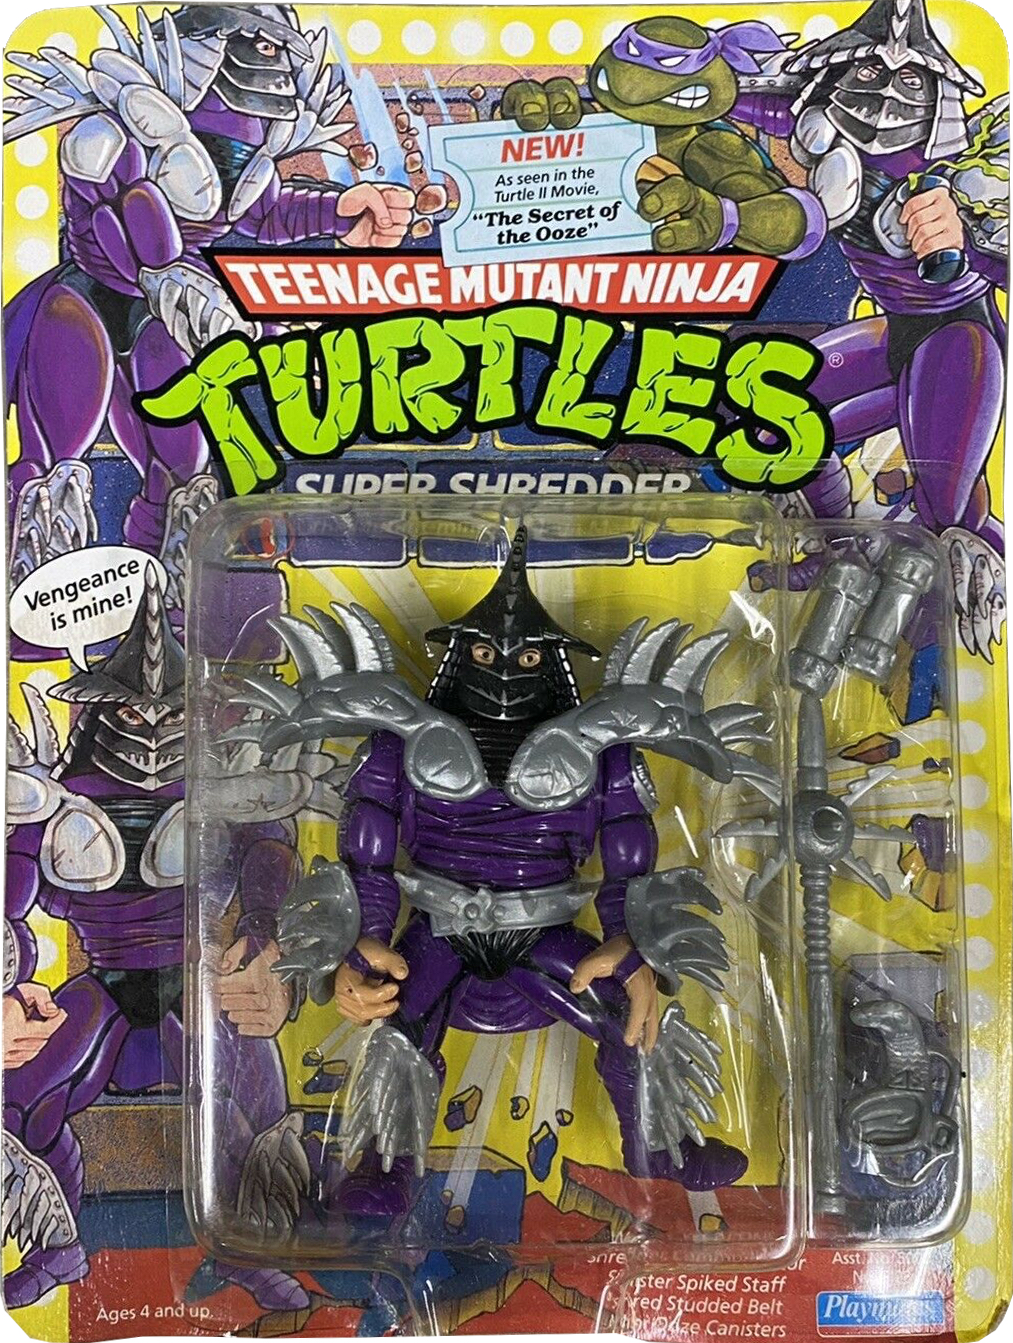 super shredder turtles in time